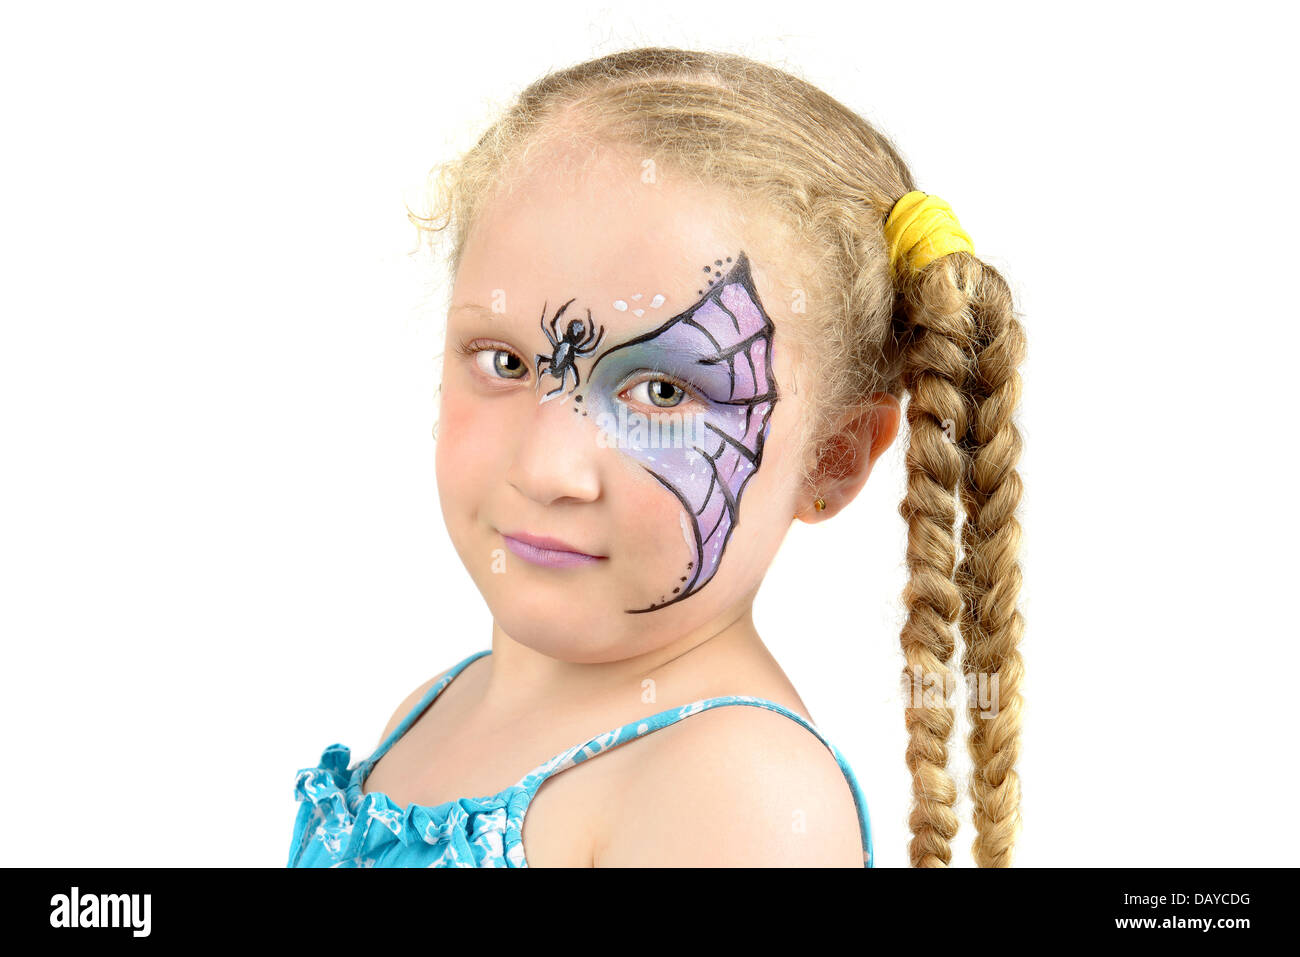 Belle jeune fille au visage peint avec une toile d'araignée Banque D'Images